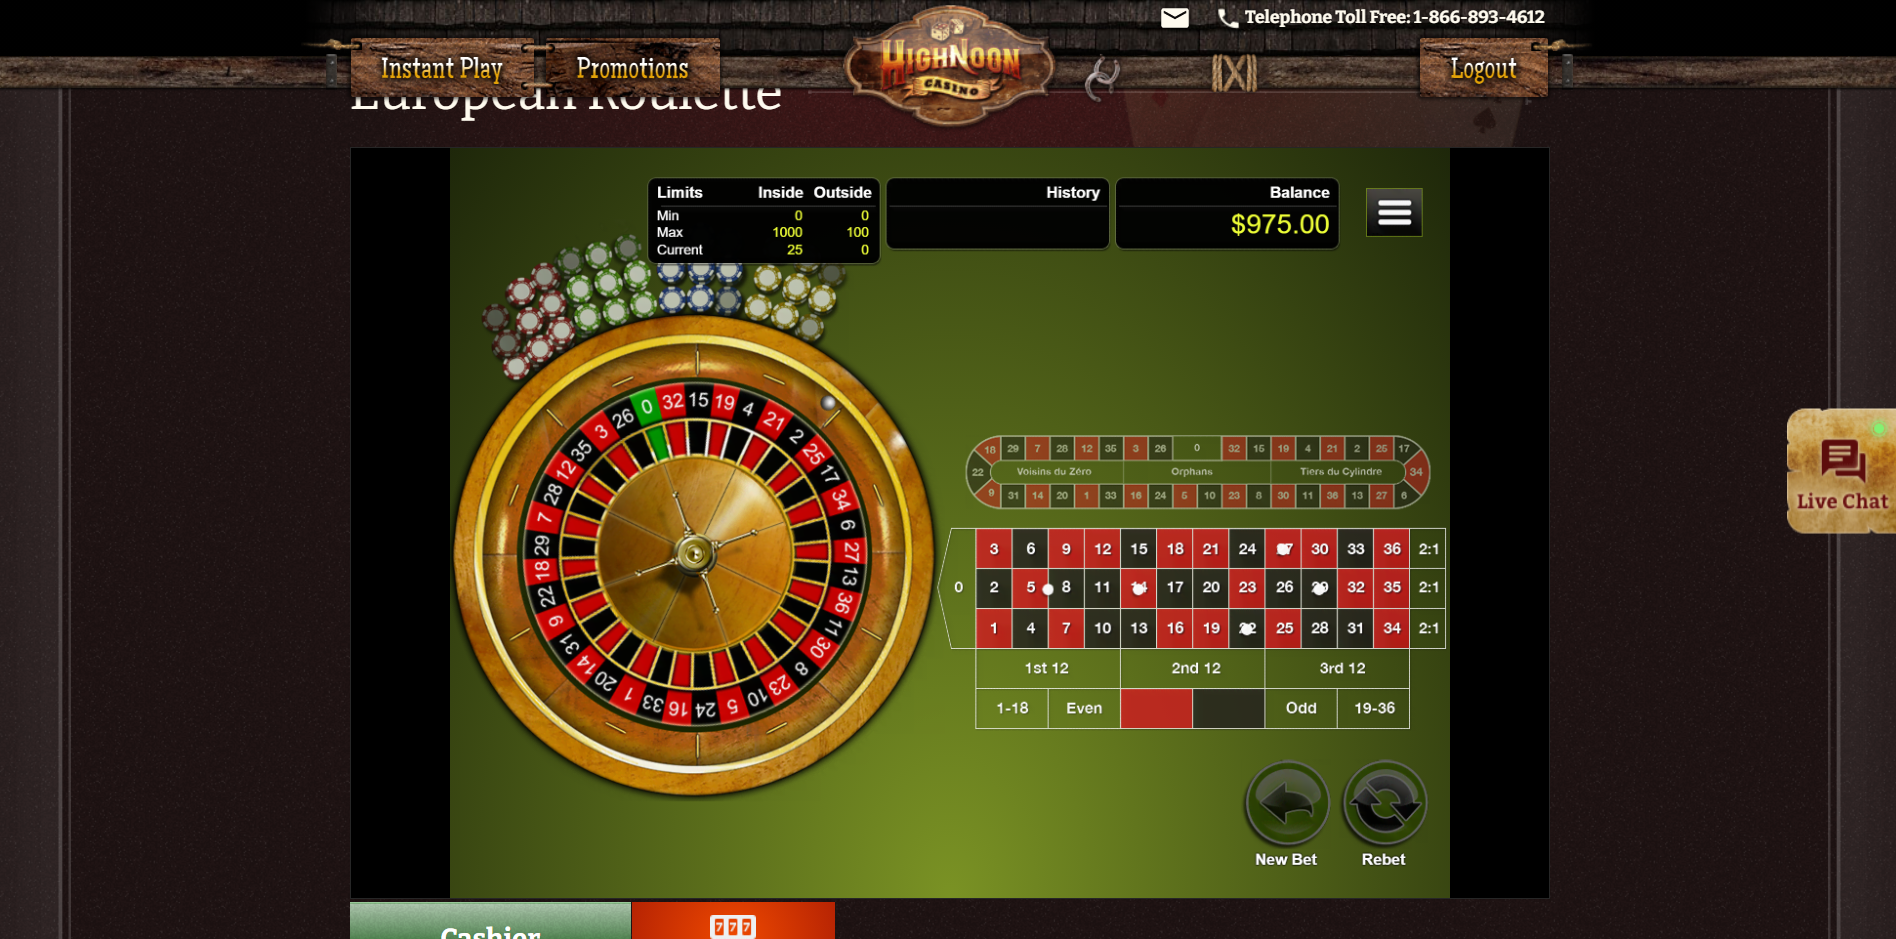 High Noon Casino Casino Games